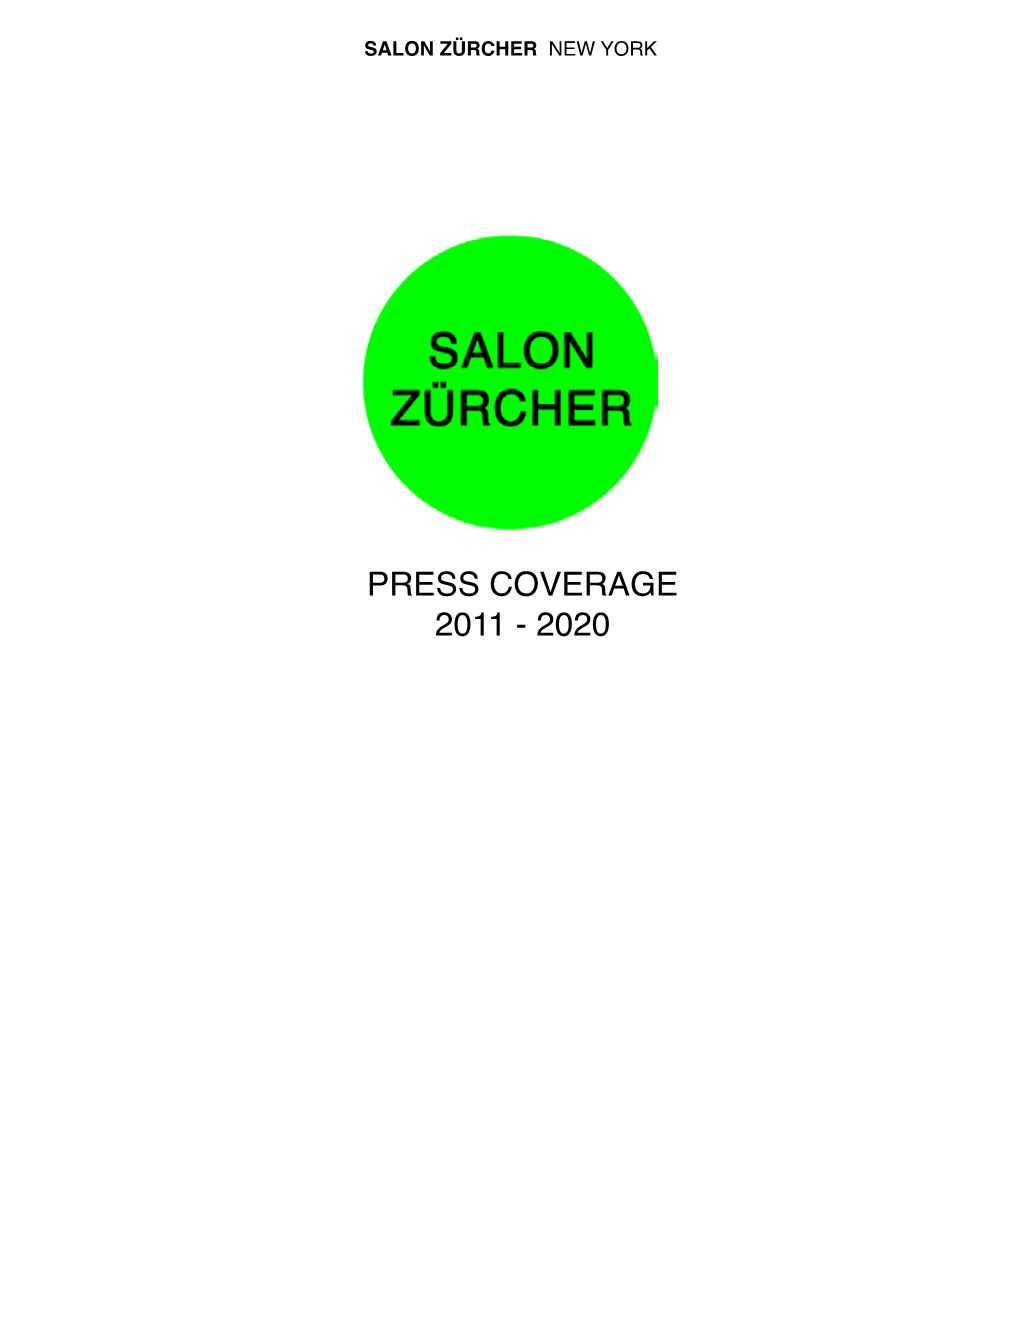 Press Coverage 2011 - 2020 Salon Zürcher New York Salon Zürcher New York Salon Zürcher New York